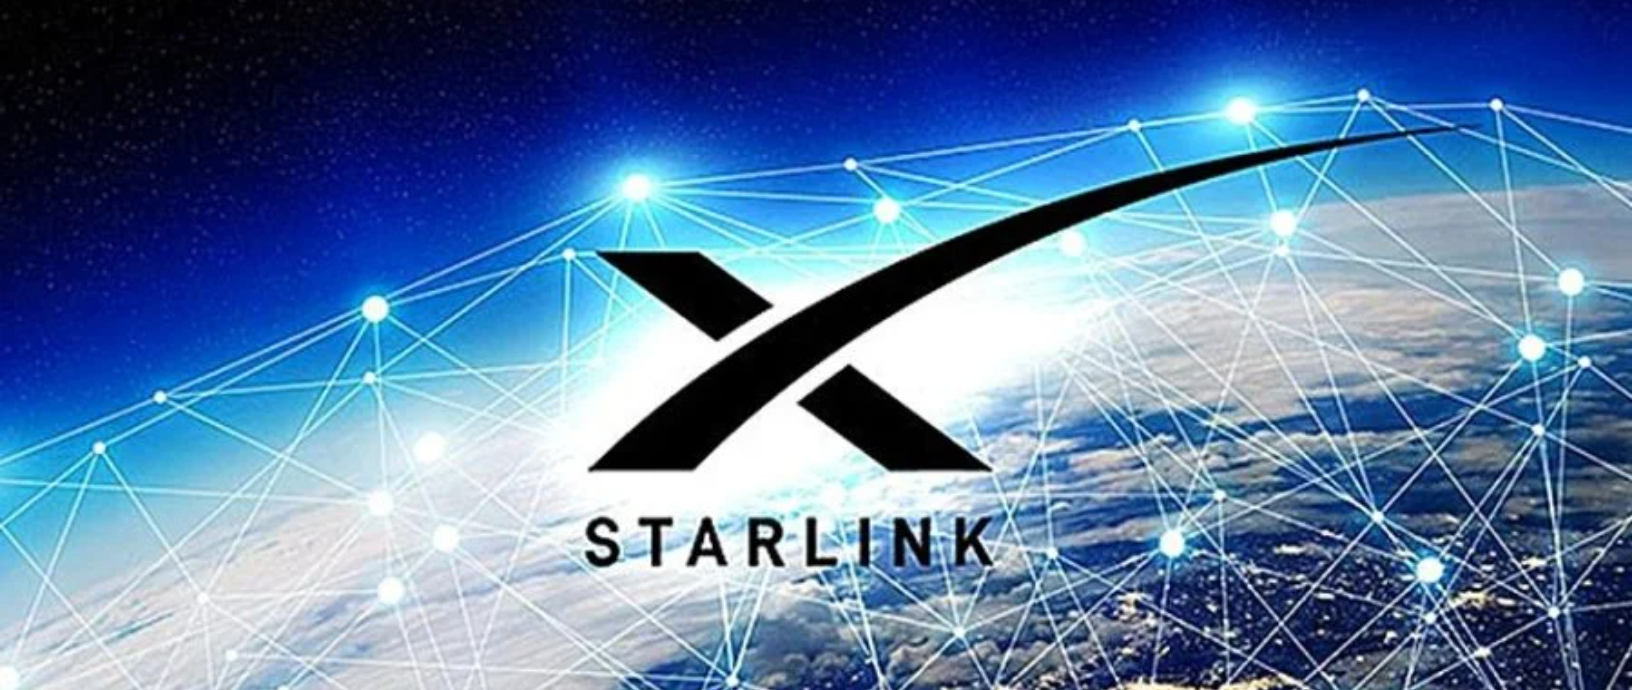 SpaceX Ілона Маска просить Пентагон взяти на себе плату за послуги Starlink в Україні